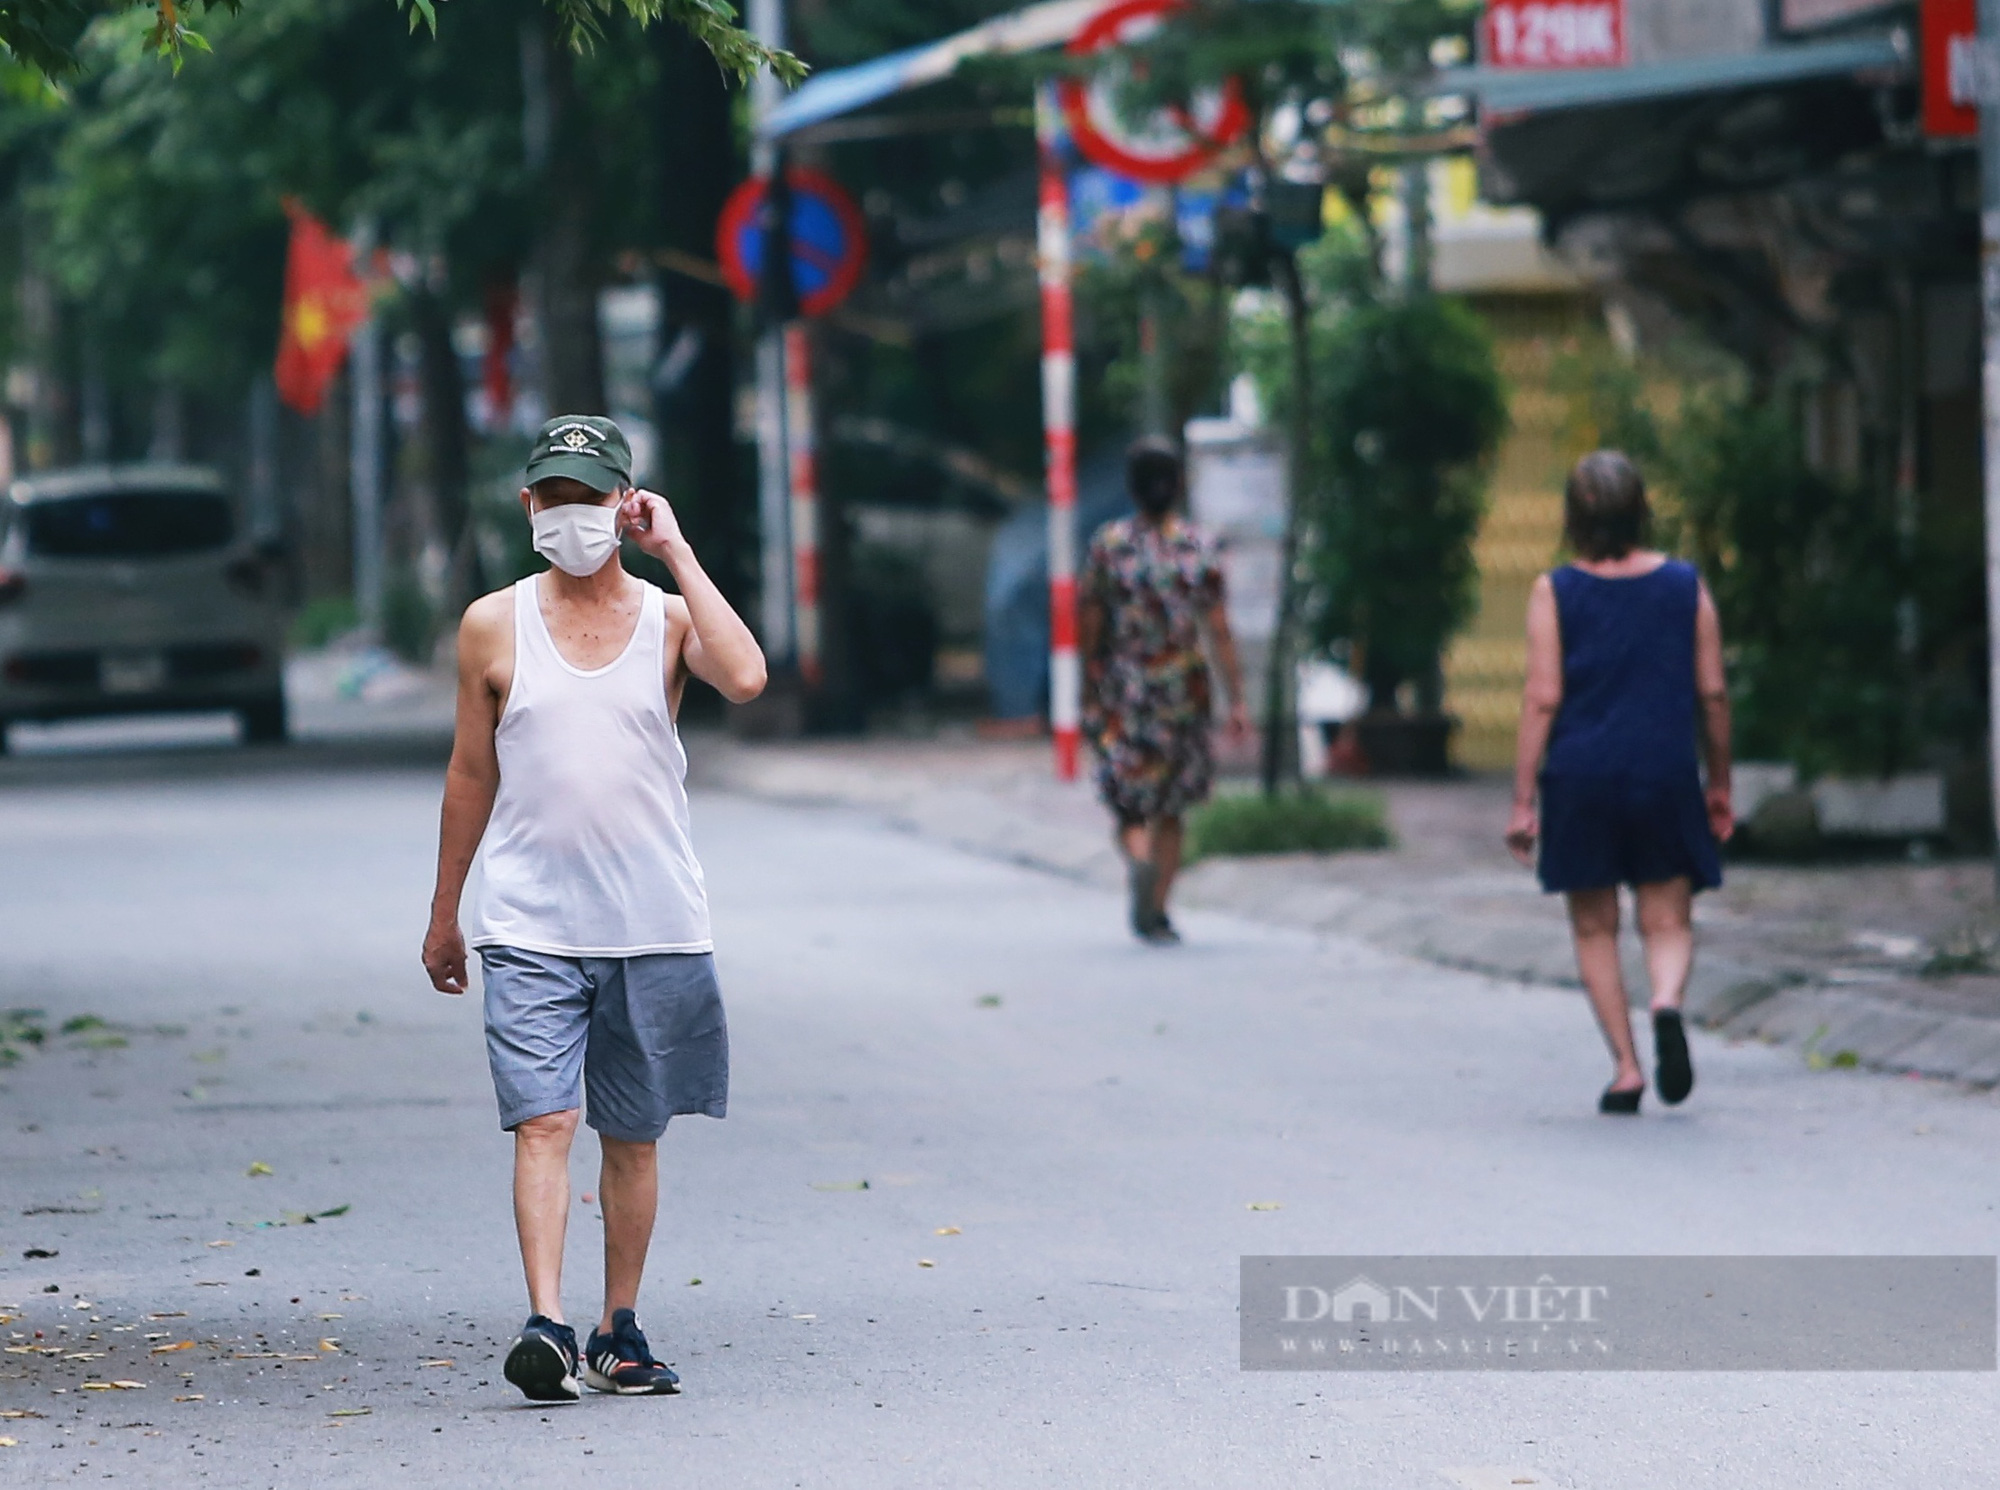 Hà Nội: Nhiều người dân vẫn lơ là chống dịch, thản nhiên luyện tập thể dục ngoài đường phố - Ảnh 3.